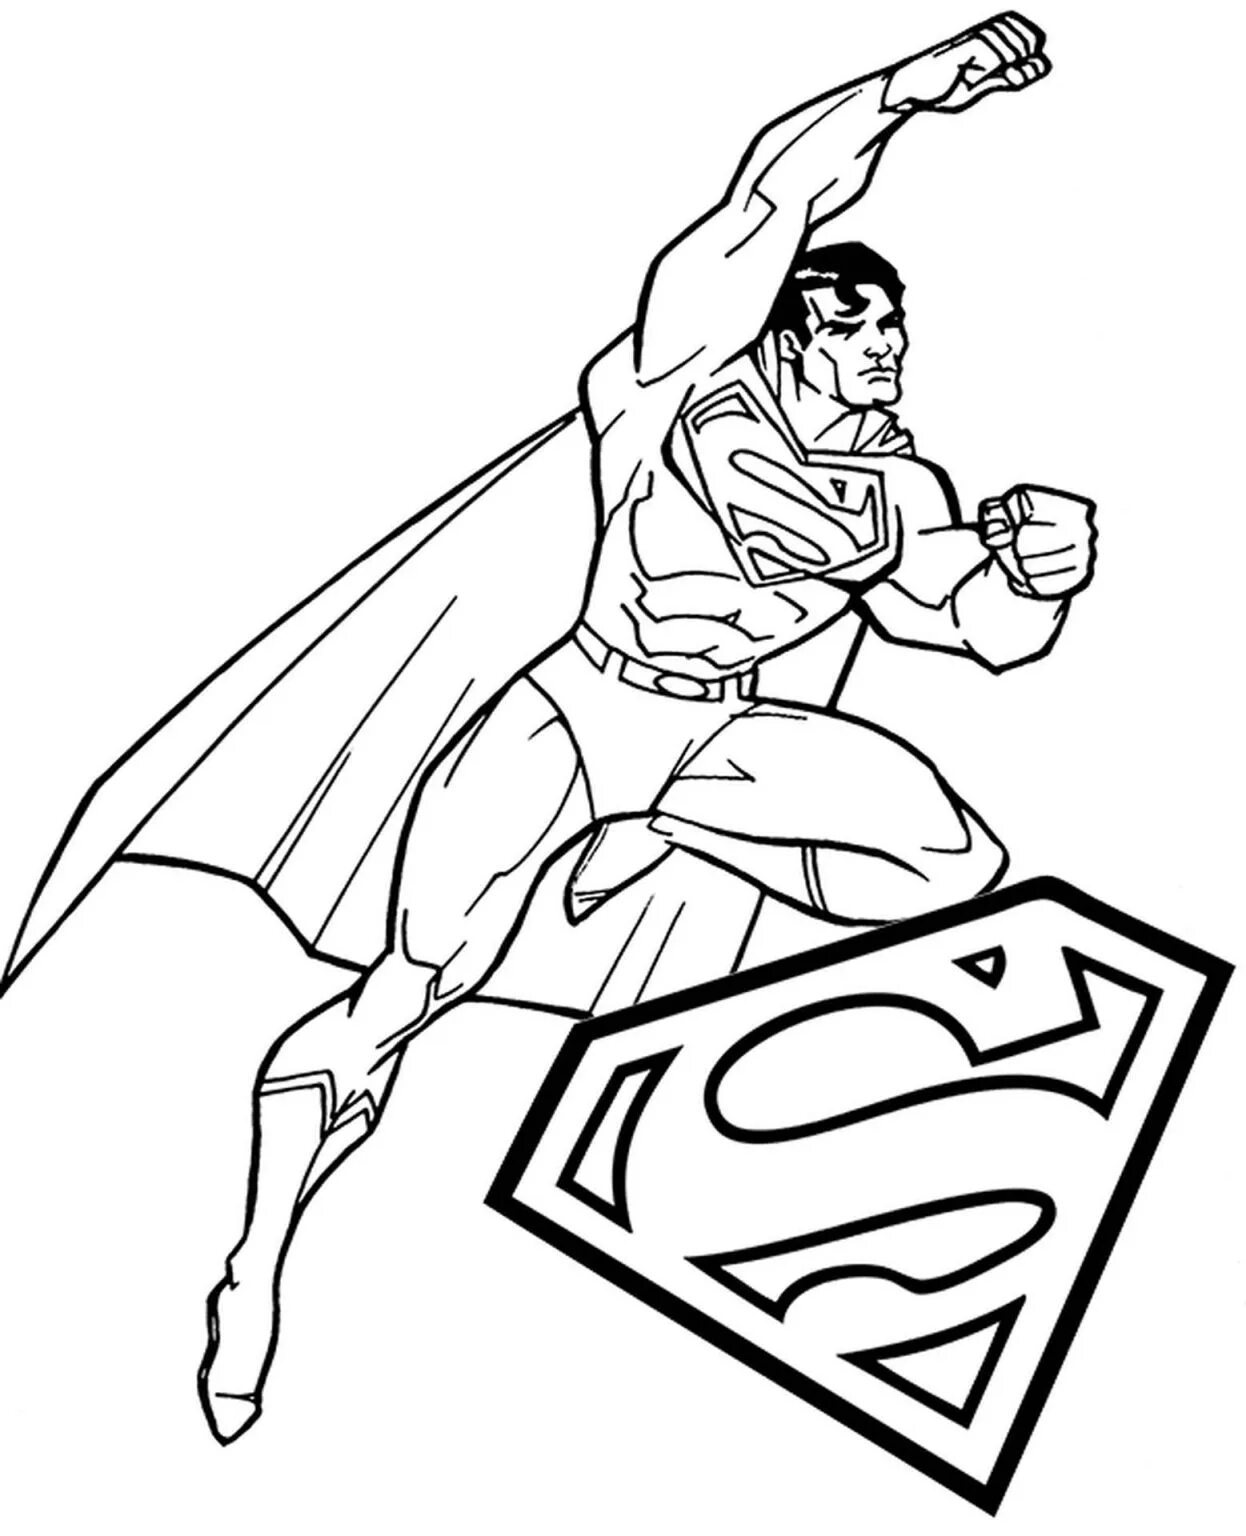 Раскраски для мальчиков Супермен